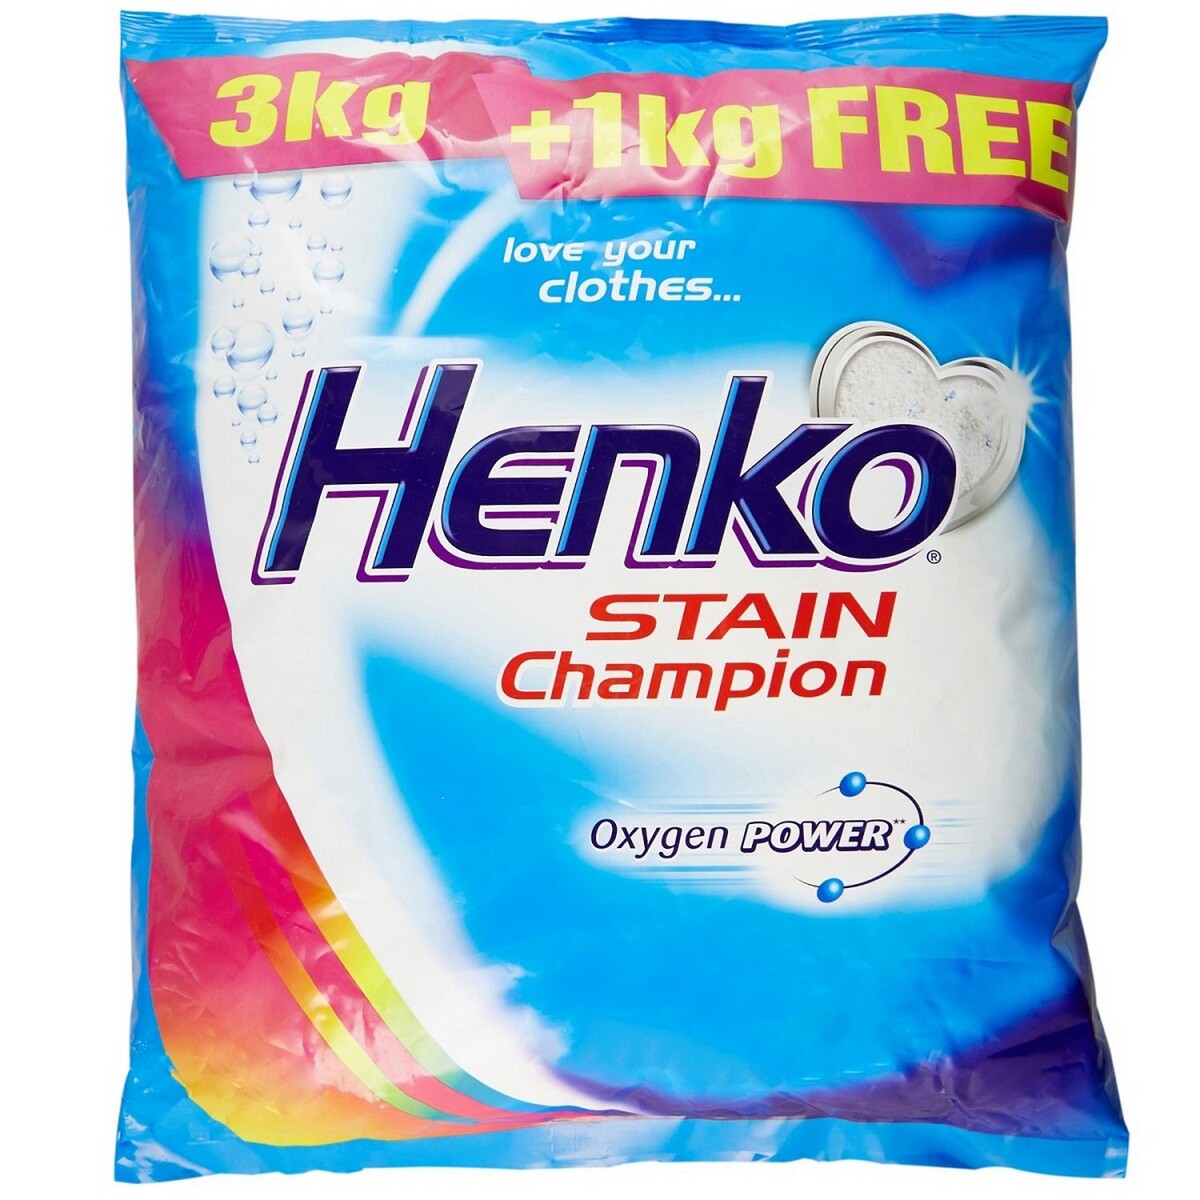 Henko Stain Champion Detergent Powder 3Kg + 1Kg Free